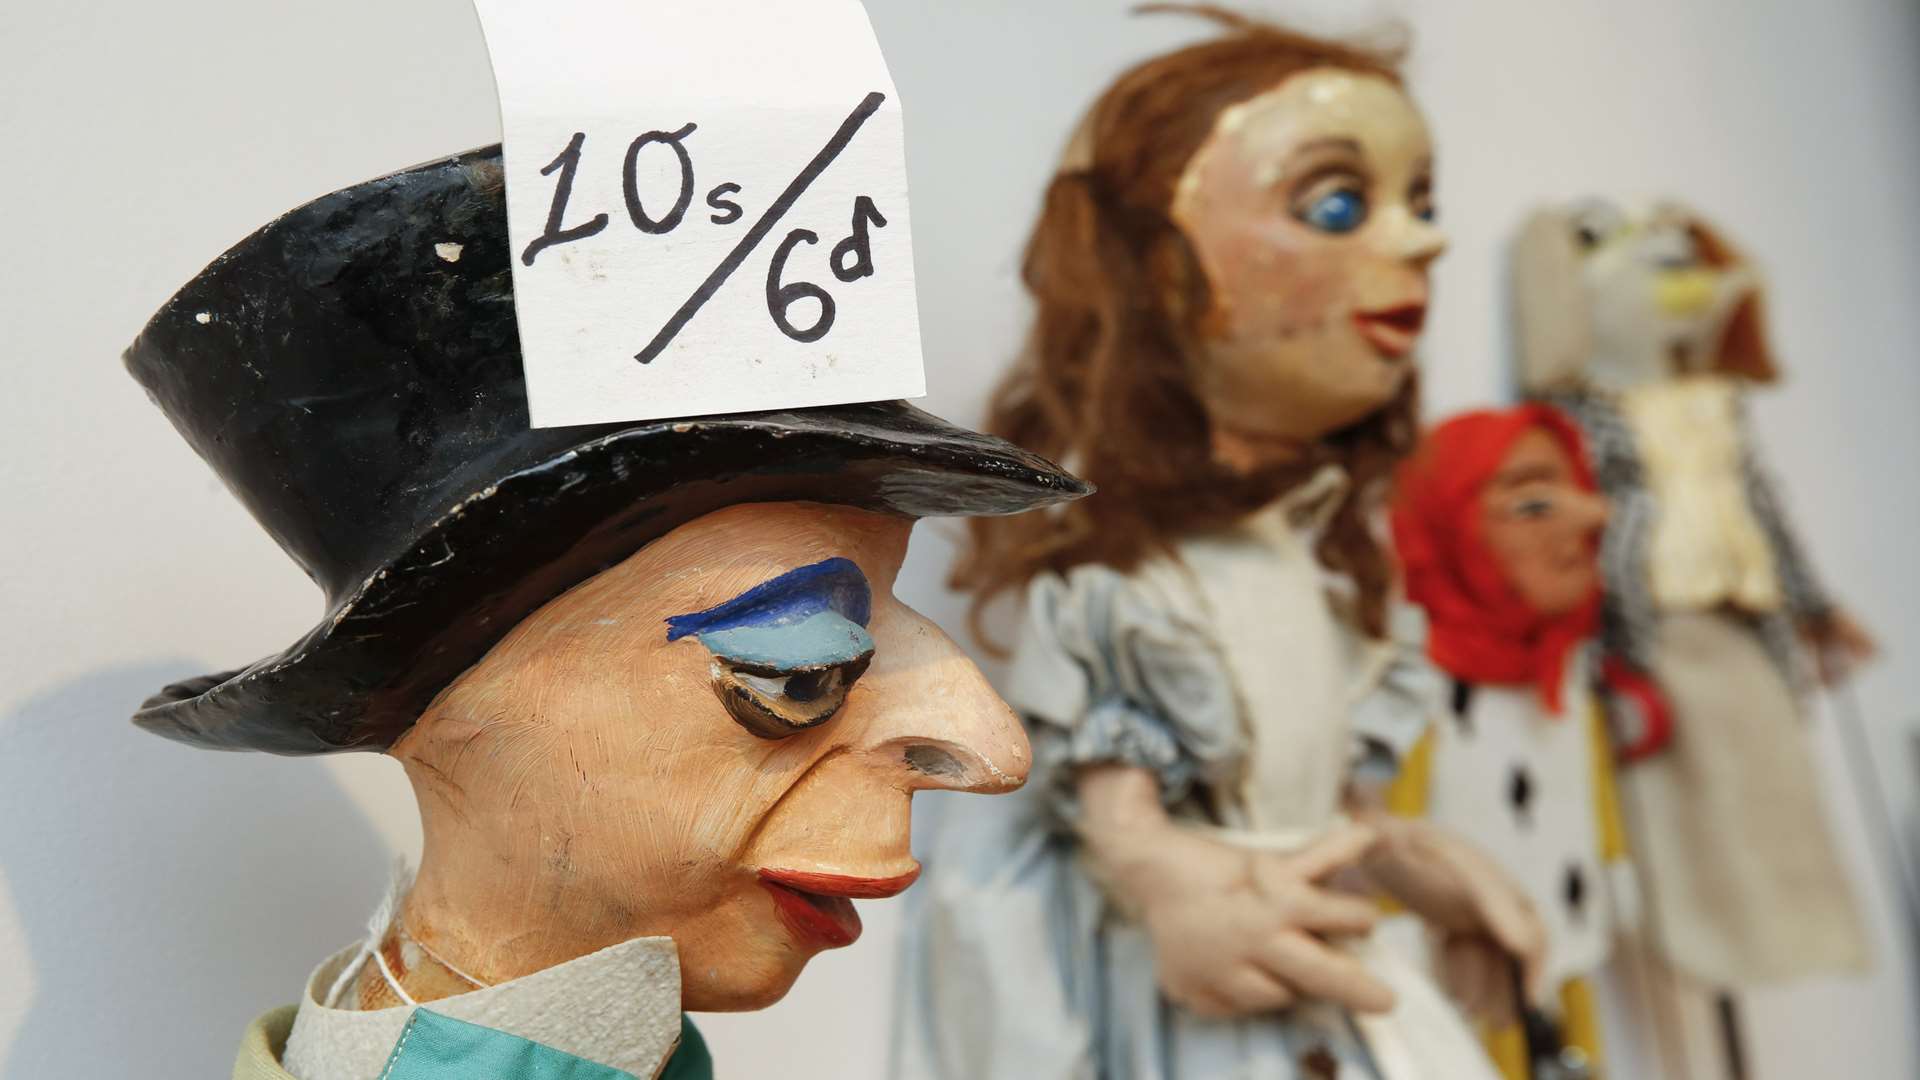 Alice in Wonderland puppets